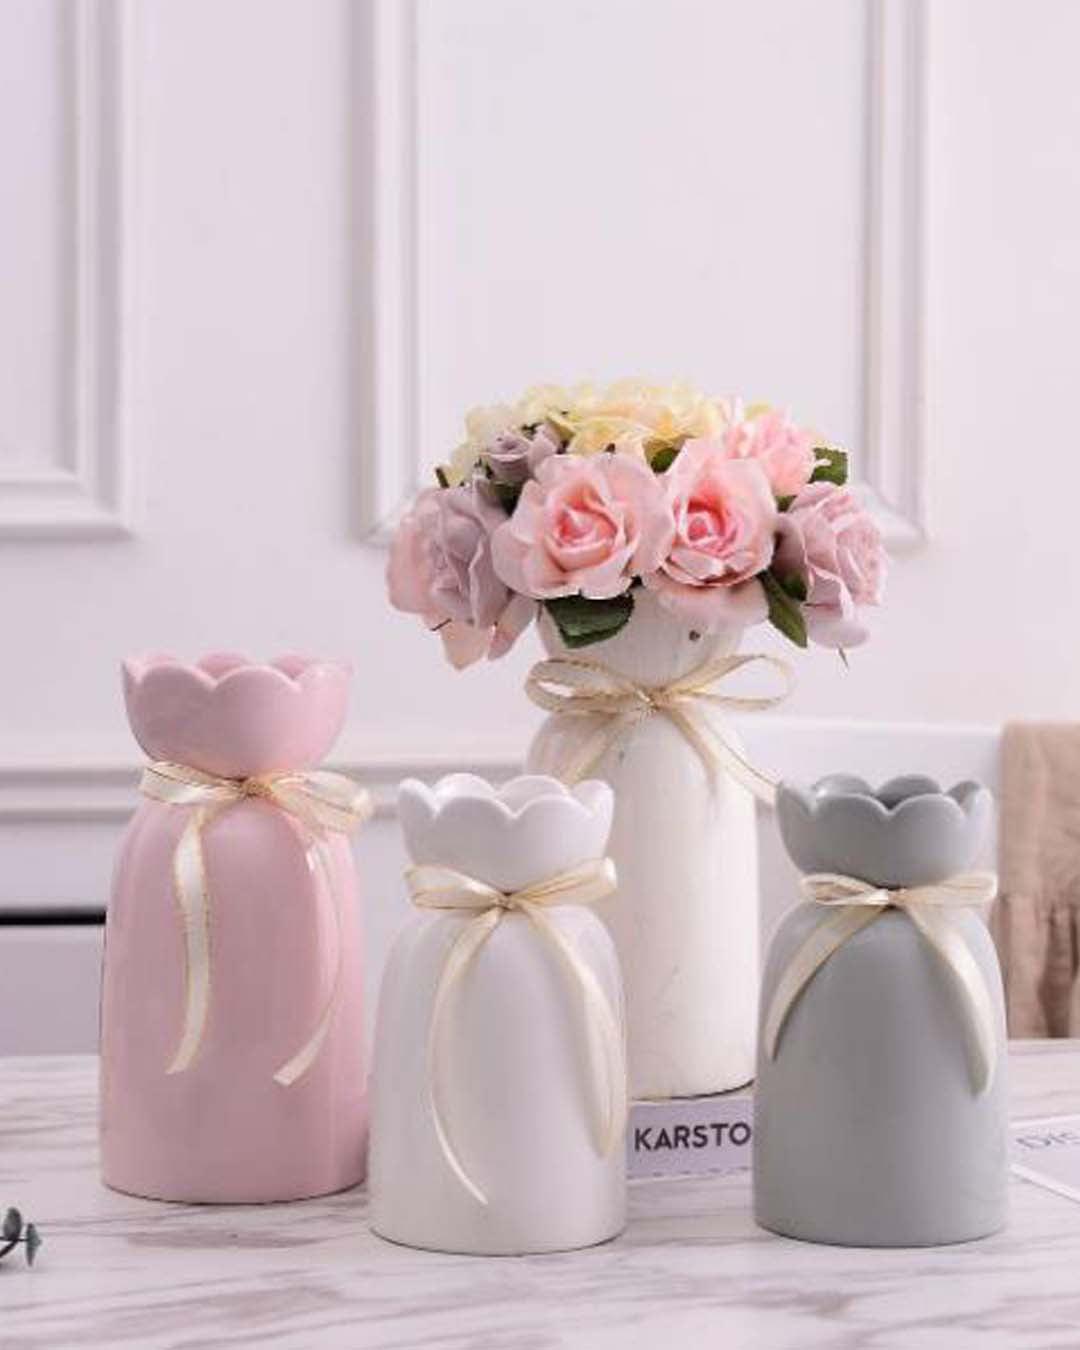 Solid Vase, Floral Shaped Mouth, Grey, Ceramic - MARKET 99